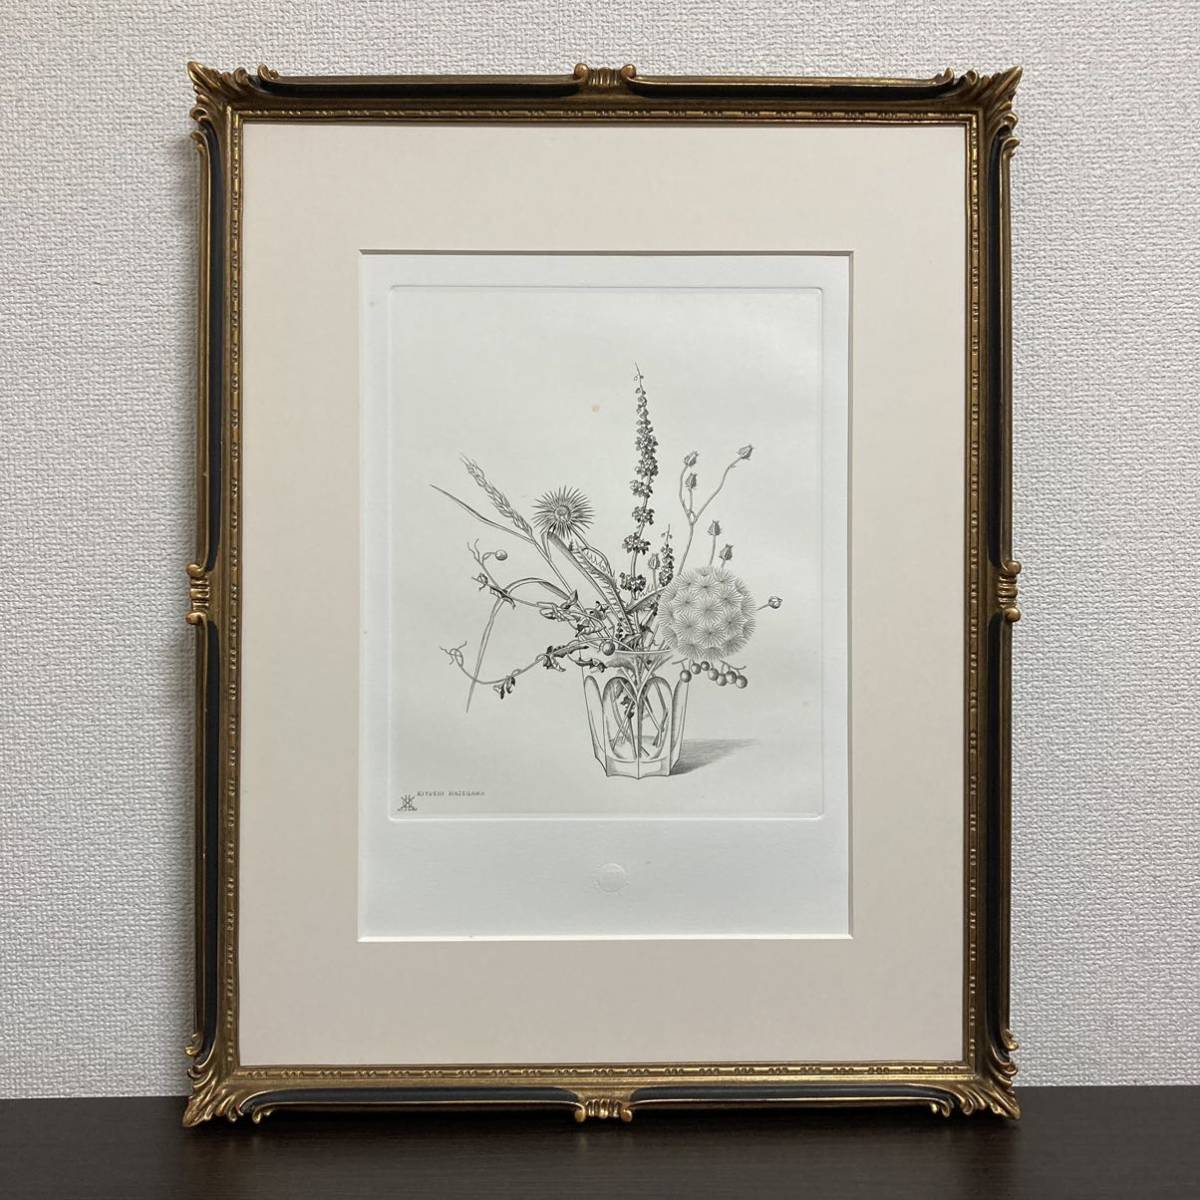 [Authentizität garantiert] Kiyoshi Hasegawa Wild Flowers in a Cup Radierung gerahmter Druck Gemälde Kupferstichdruck, Kunstwerk, drucken, Kupferstich, Radierung